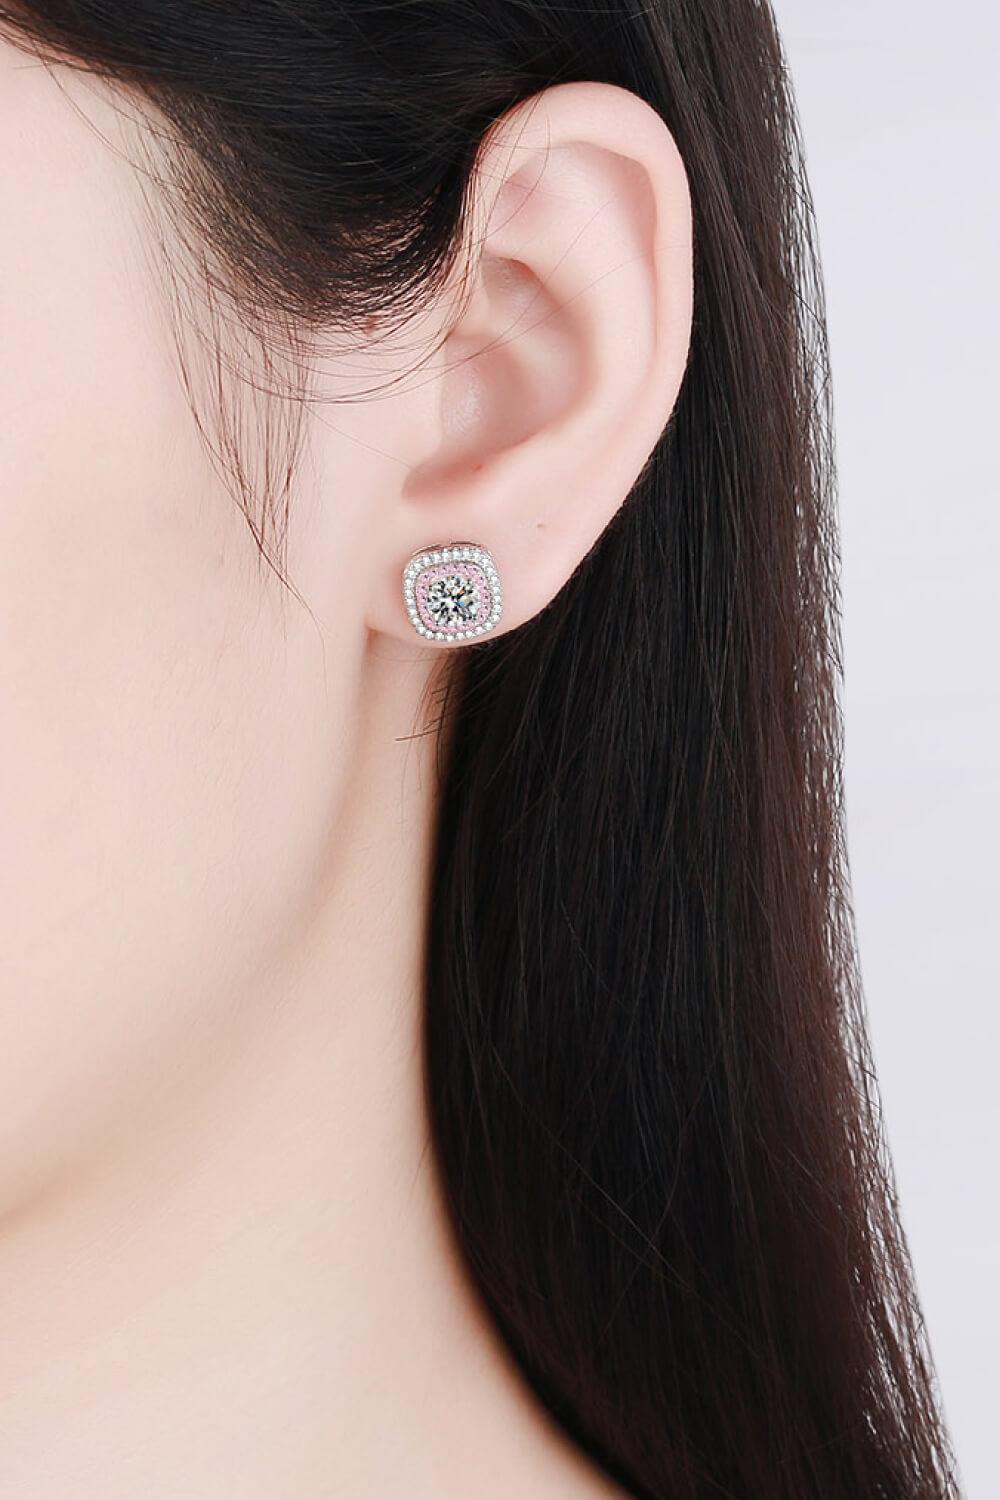 Geometric Moissanite Stud Earrings - Lab Fashion, Home & Health